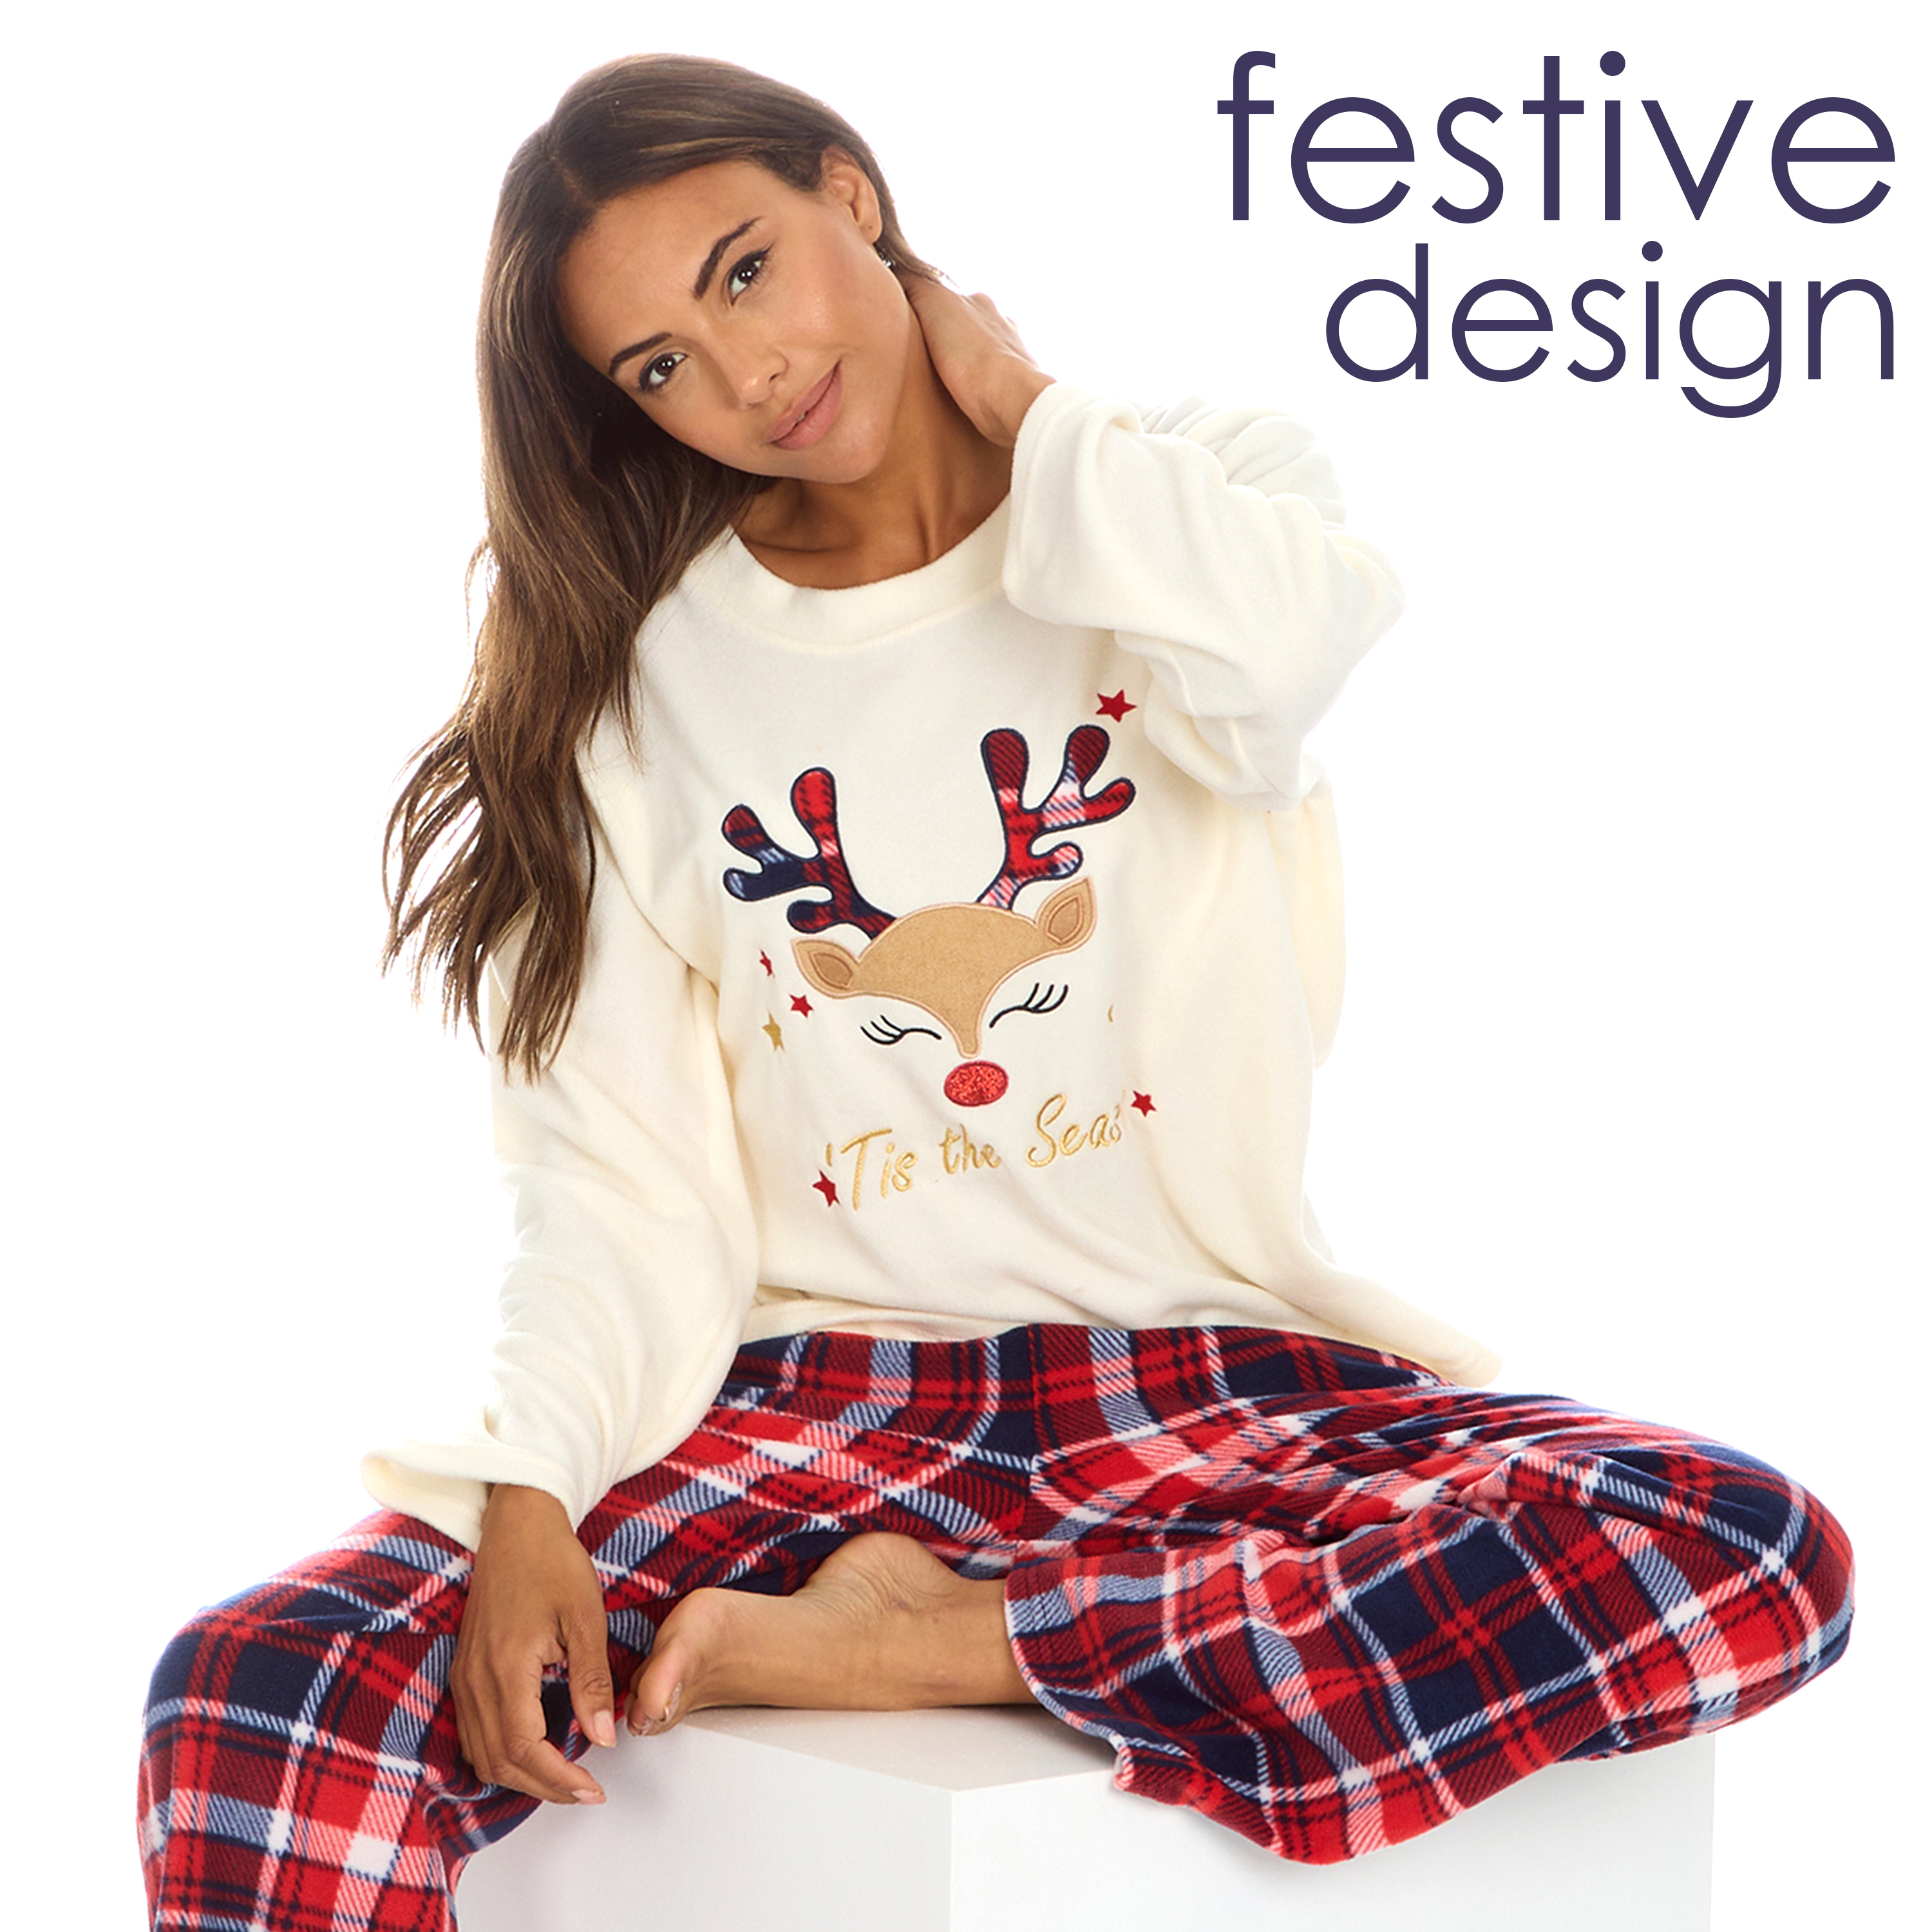 Womens Fleece Pyjama Set Reindeer Tartan Check Warm Pyjamas Full Length S-XL  UK